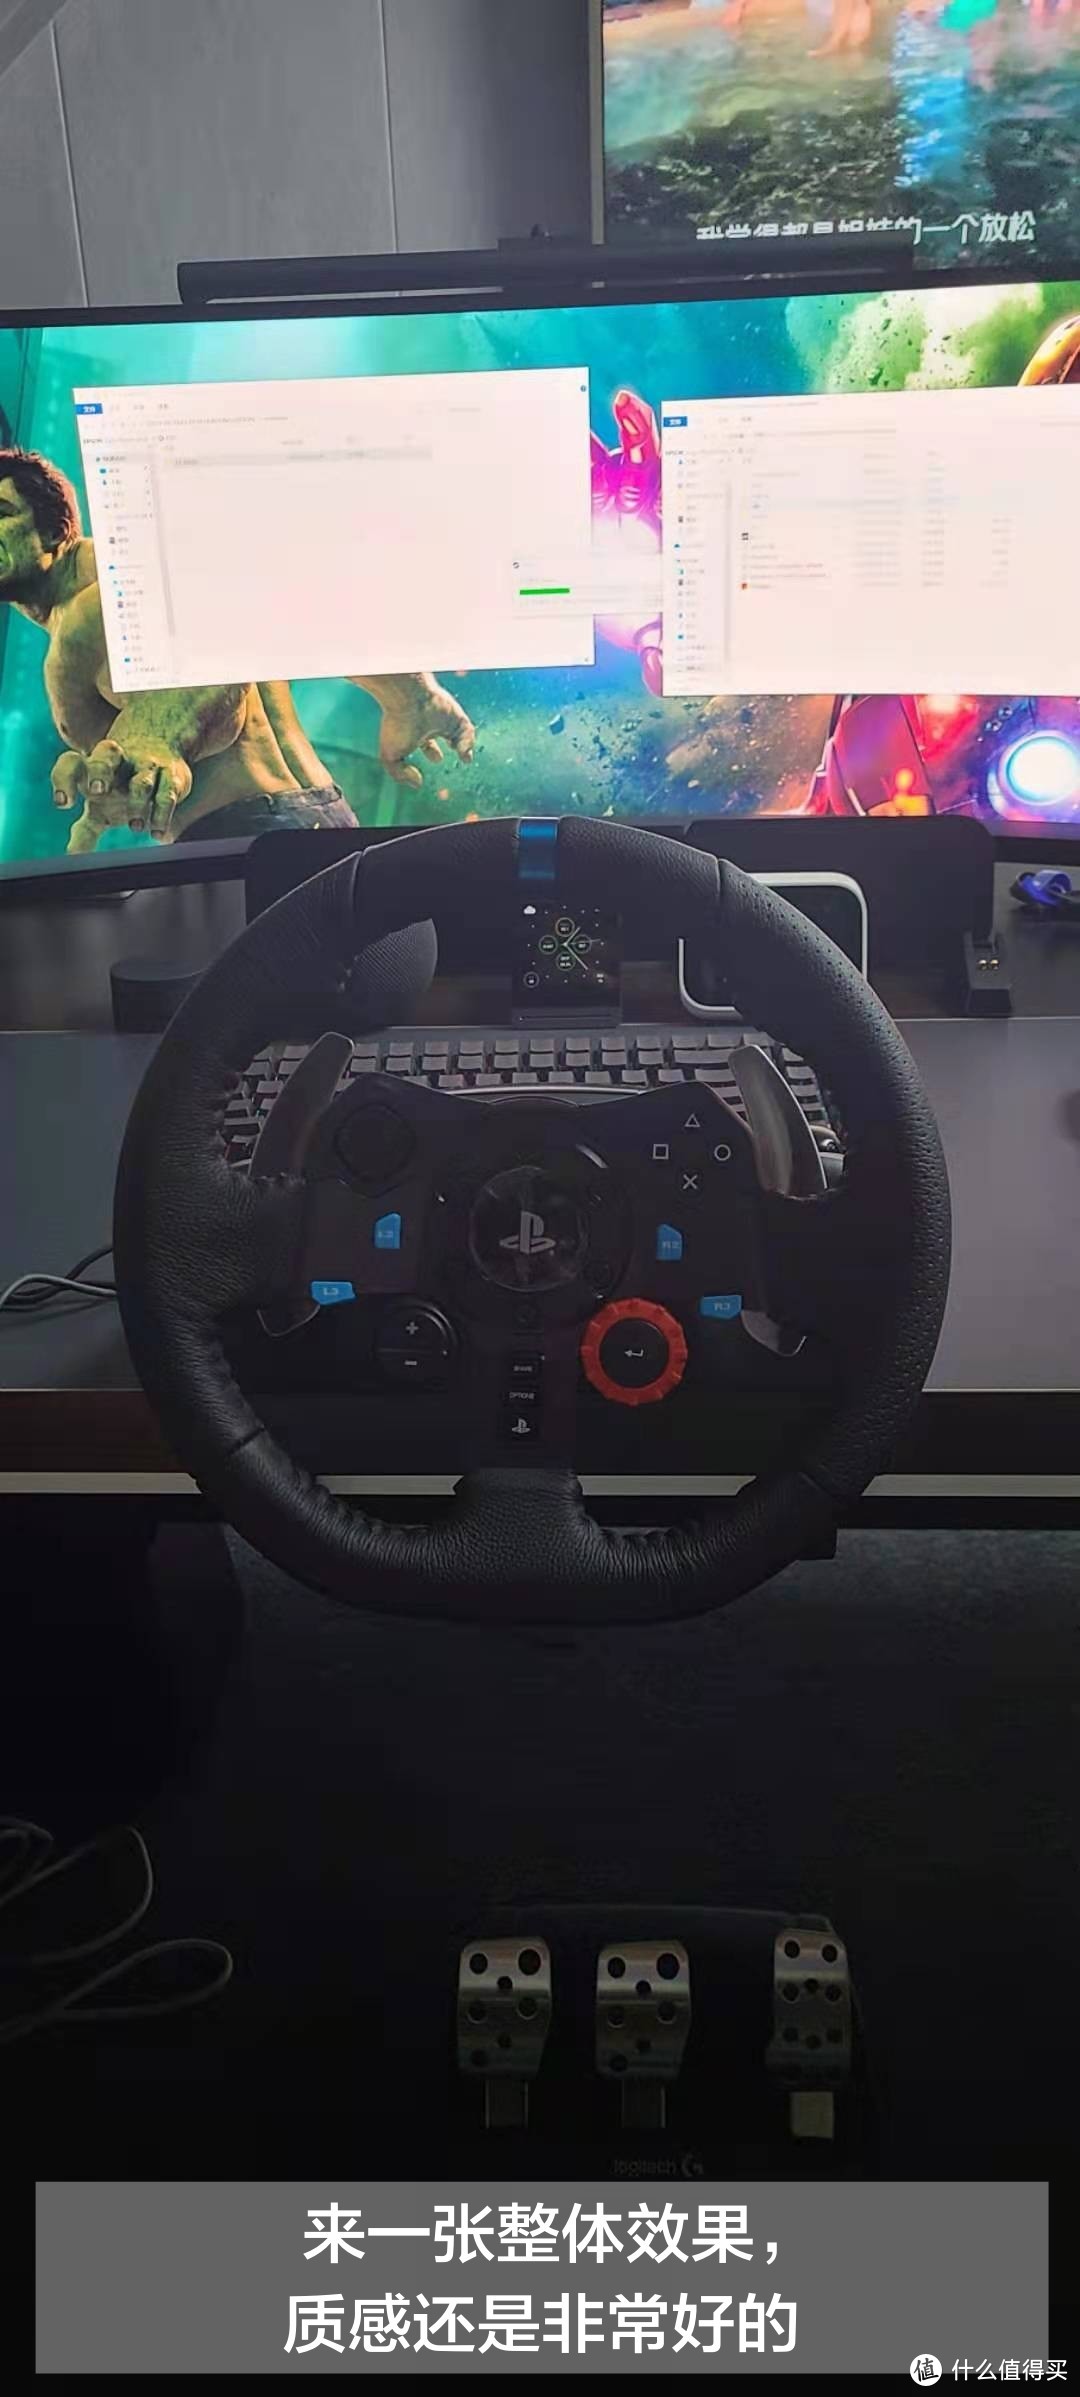 罗技G29电脑游戏方向盘赛车驾驶模拟器-满足你所有关于驾驶的想象